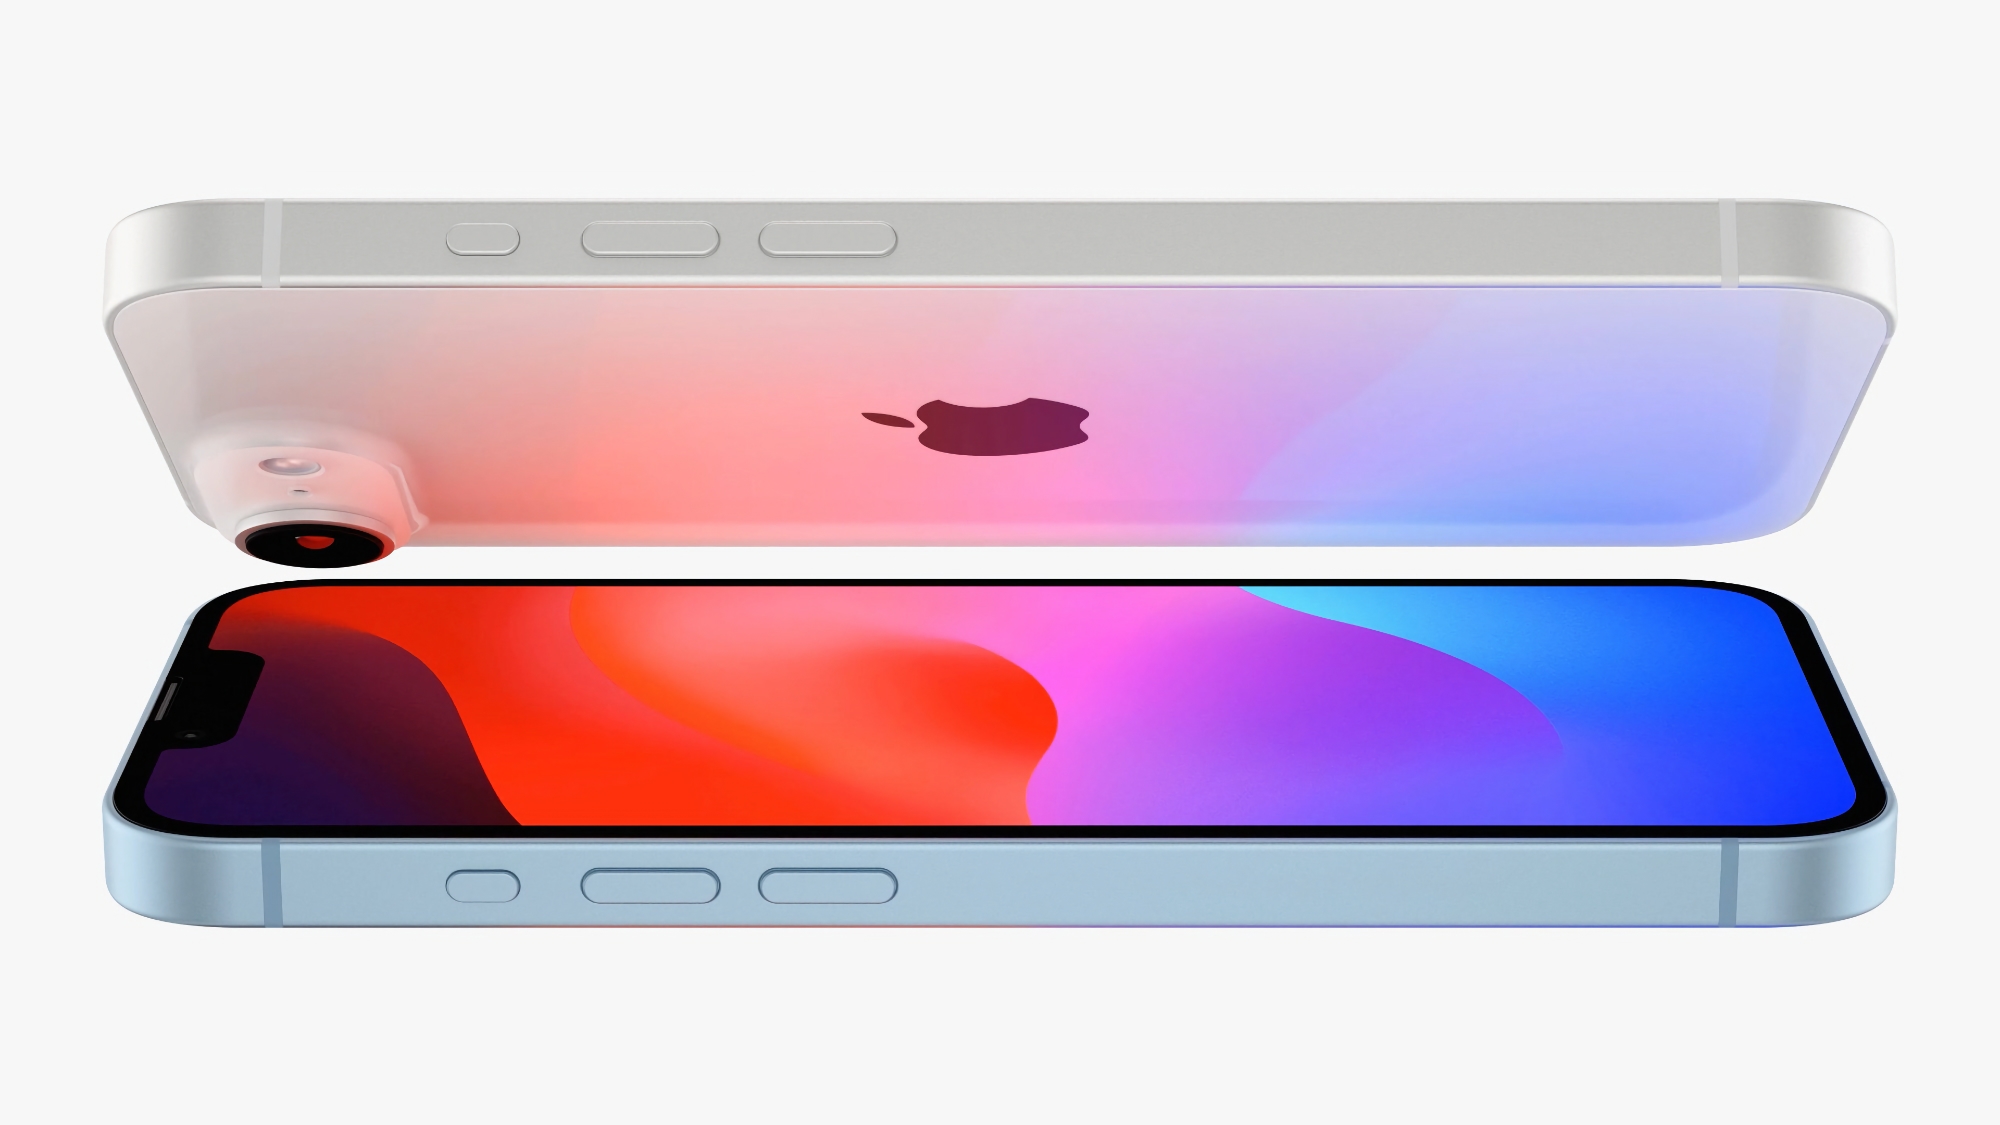 Rygte: iPhone SE 4 får en 6,1-tommers OLED-skærm fremstillet af det kinesiske firma BOE